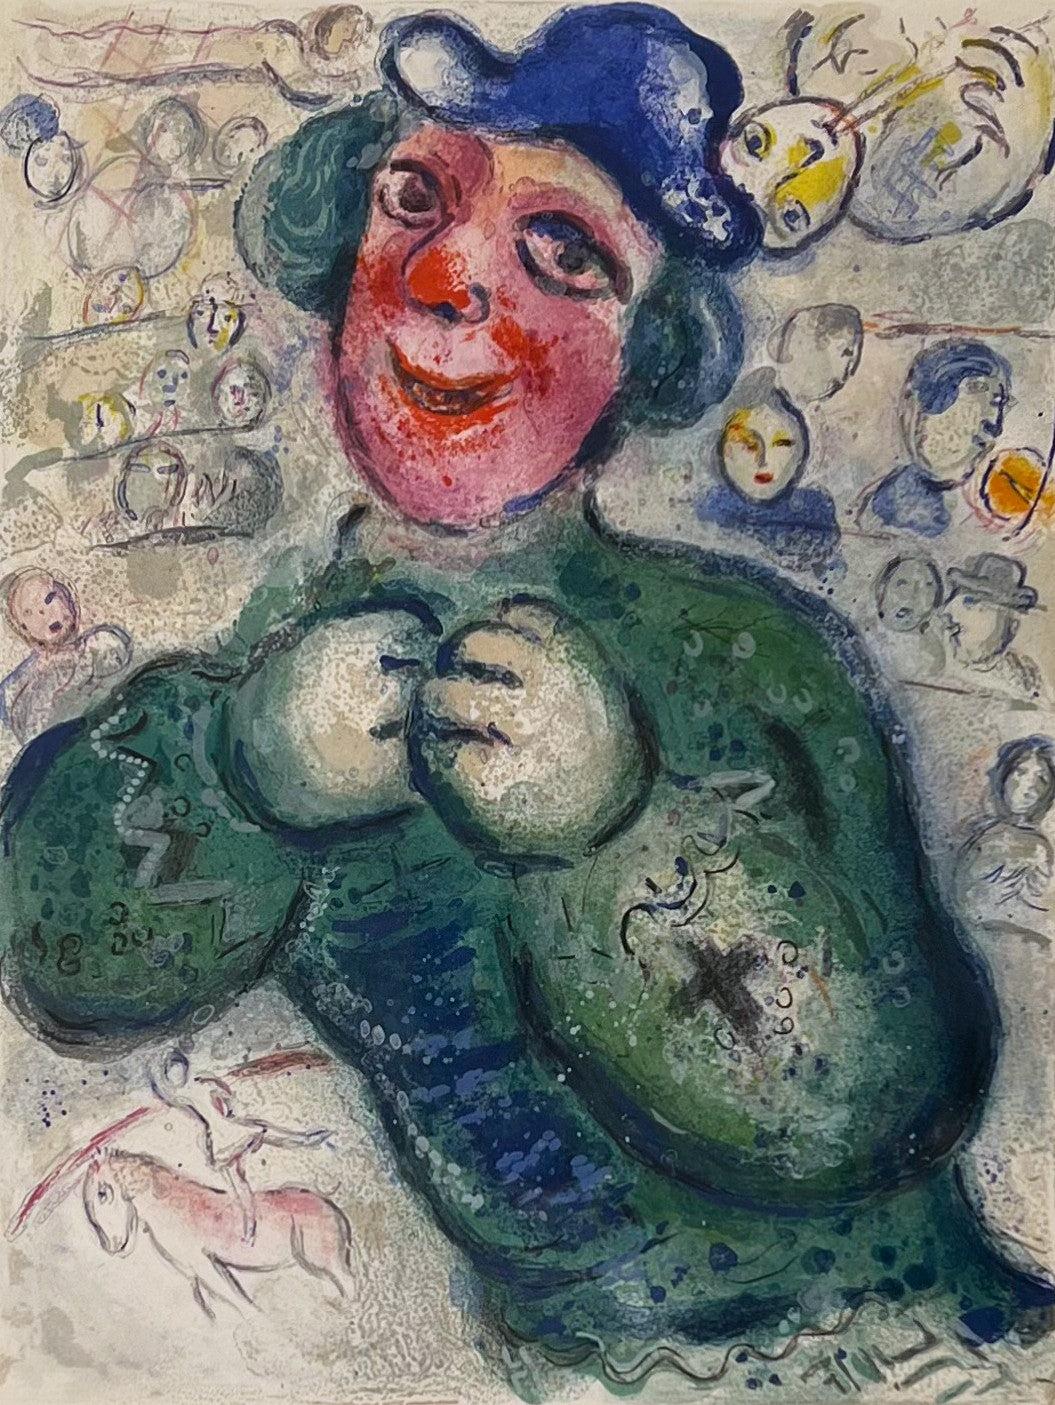 Künstler: Marc Chagall
Medium: Original-Lithografie auf Arches-Waffelpapier
Titel: Le Cirque
Jahr: 1967
Auflage: 52/250
Gerahmt Größe: 29 x 25 Zoll
Bildgröße: 16 3/4 x 12 3/4 Zoll
Blattgröße: 16 3/4 x 12 3/4 Zoll
Referenz: Mourlot